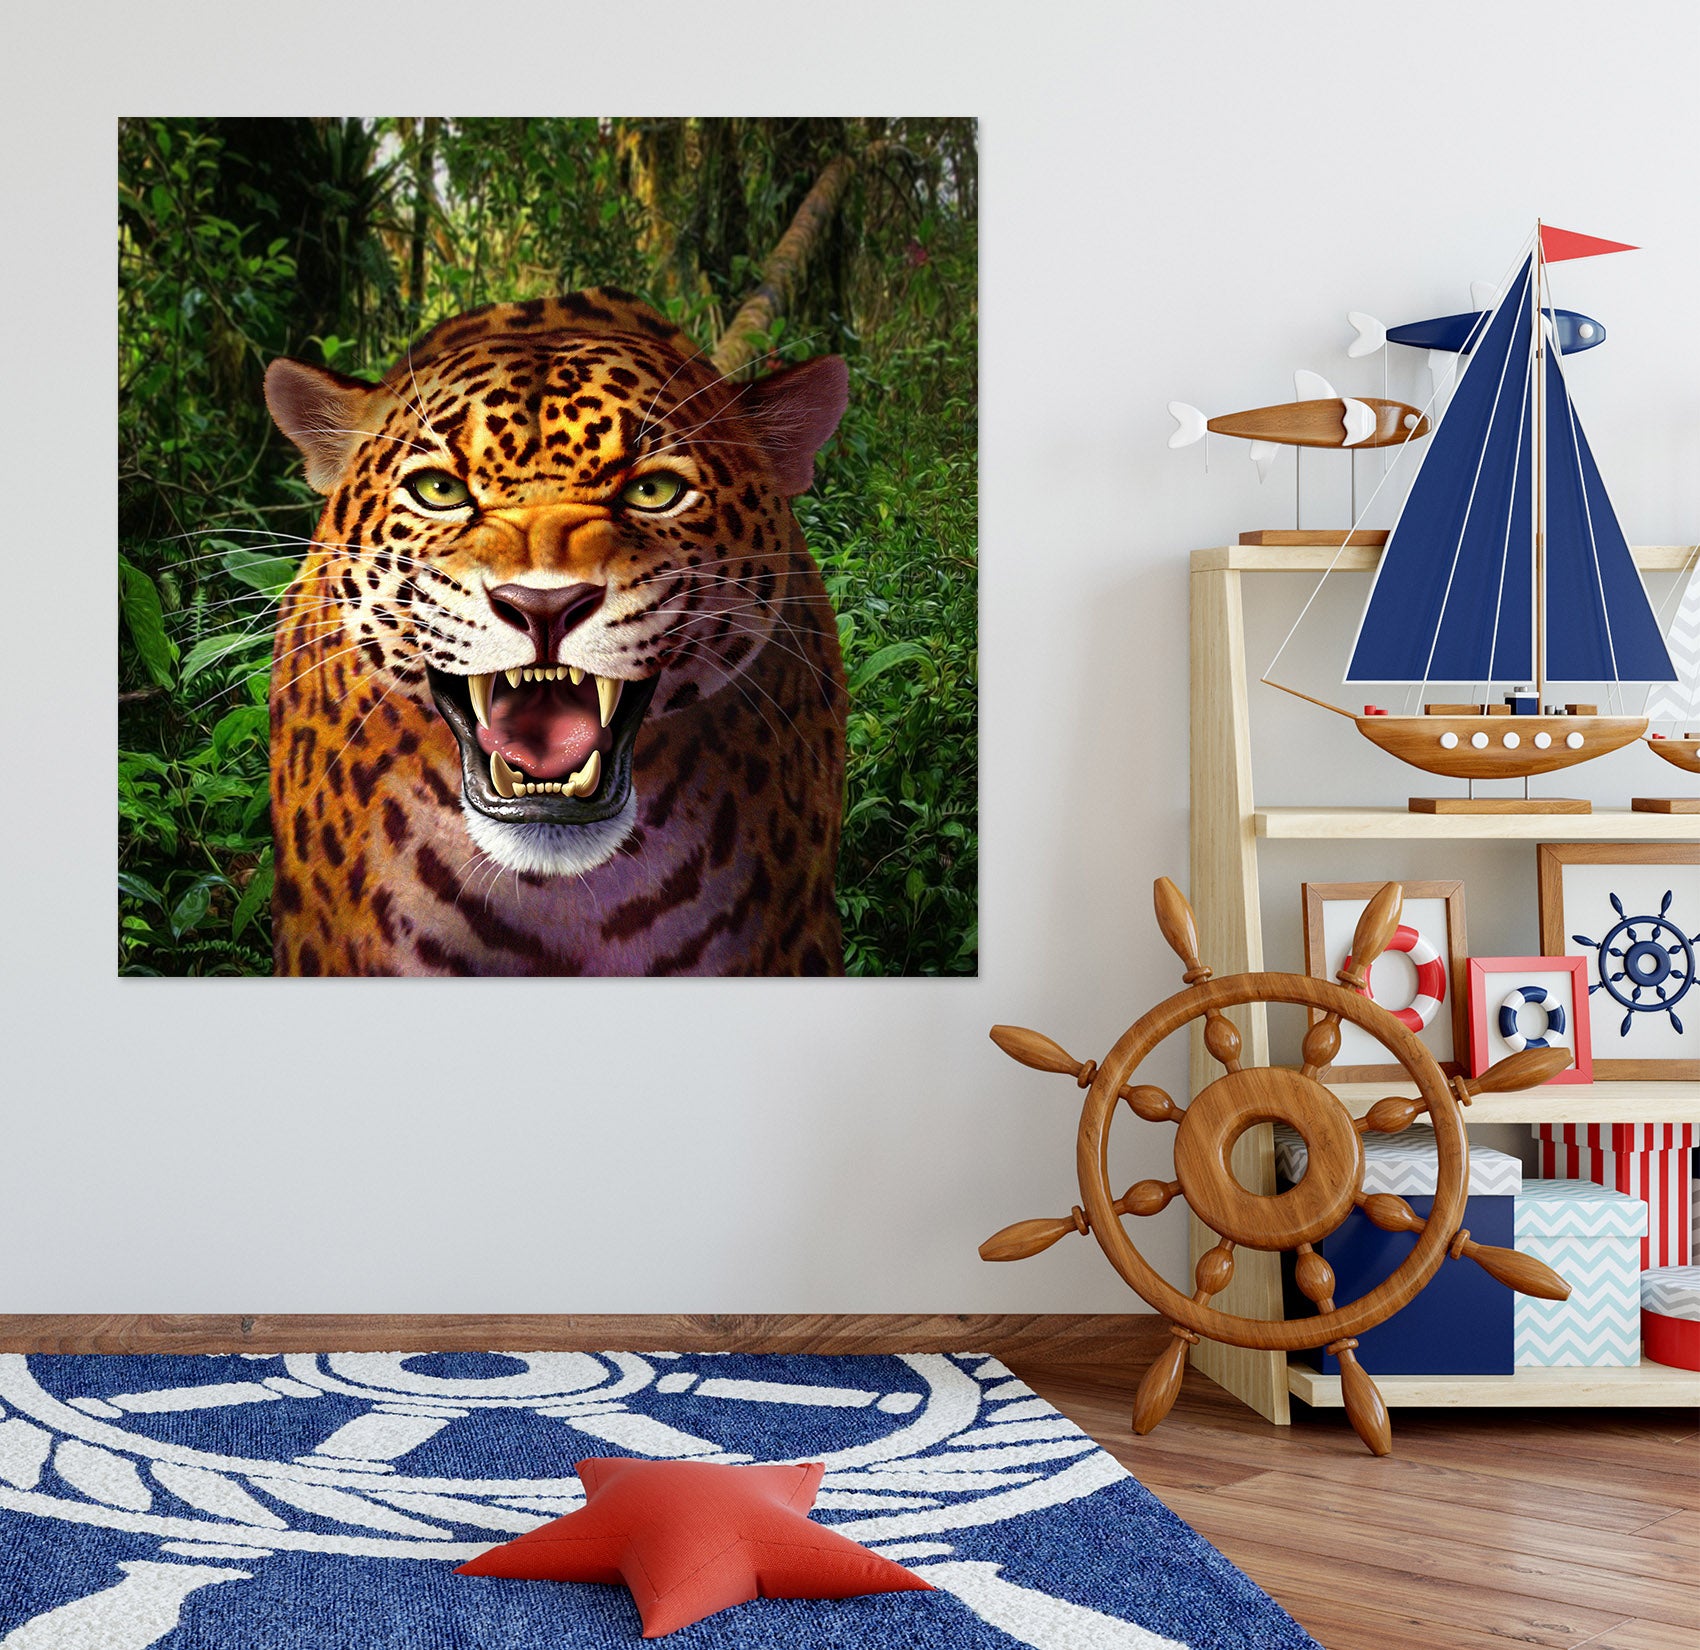 3D Leopard 85174 Jerry LoFaro Wall Sticker